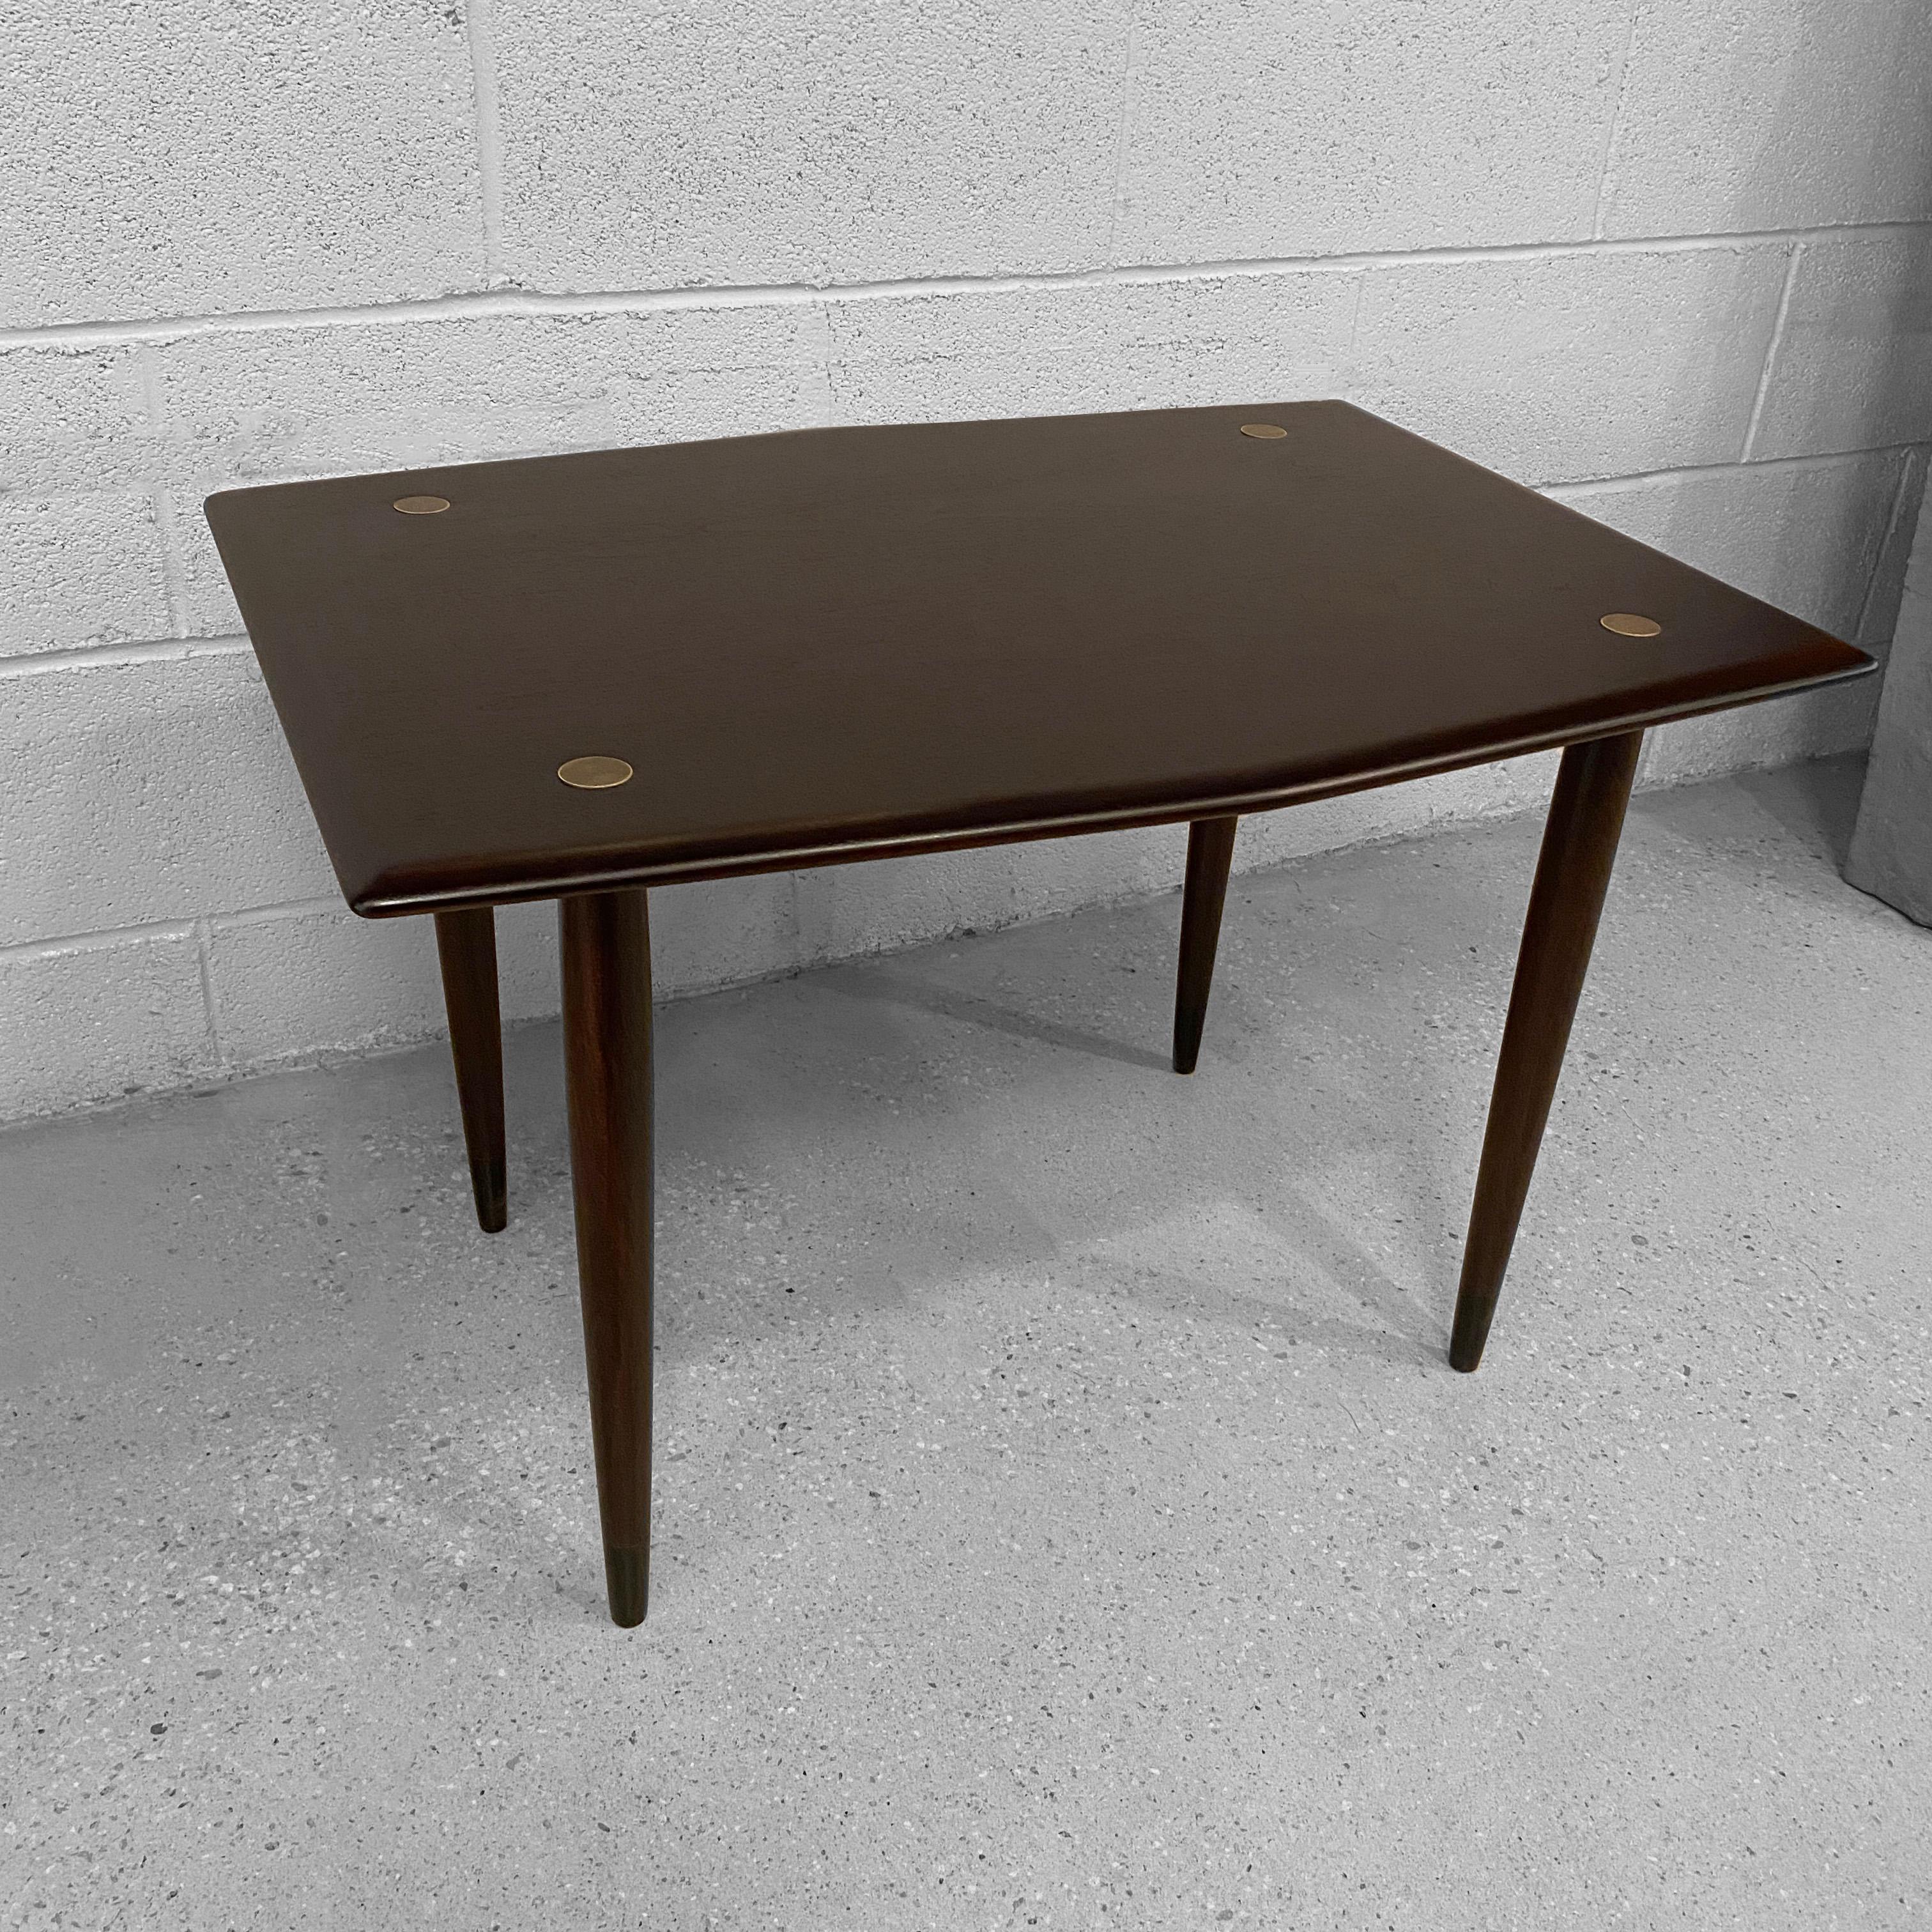 Swedish Scandinavian Modern Teak Side Table By Yngve Ekström For Dux For Sale